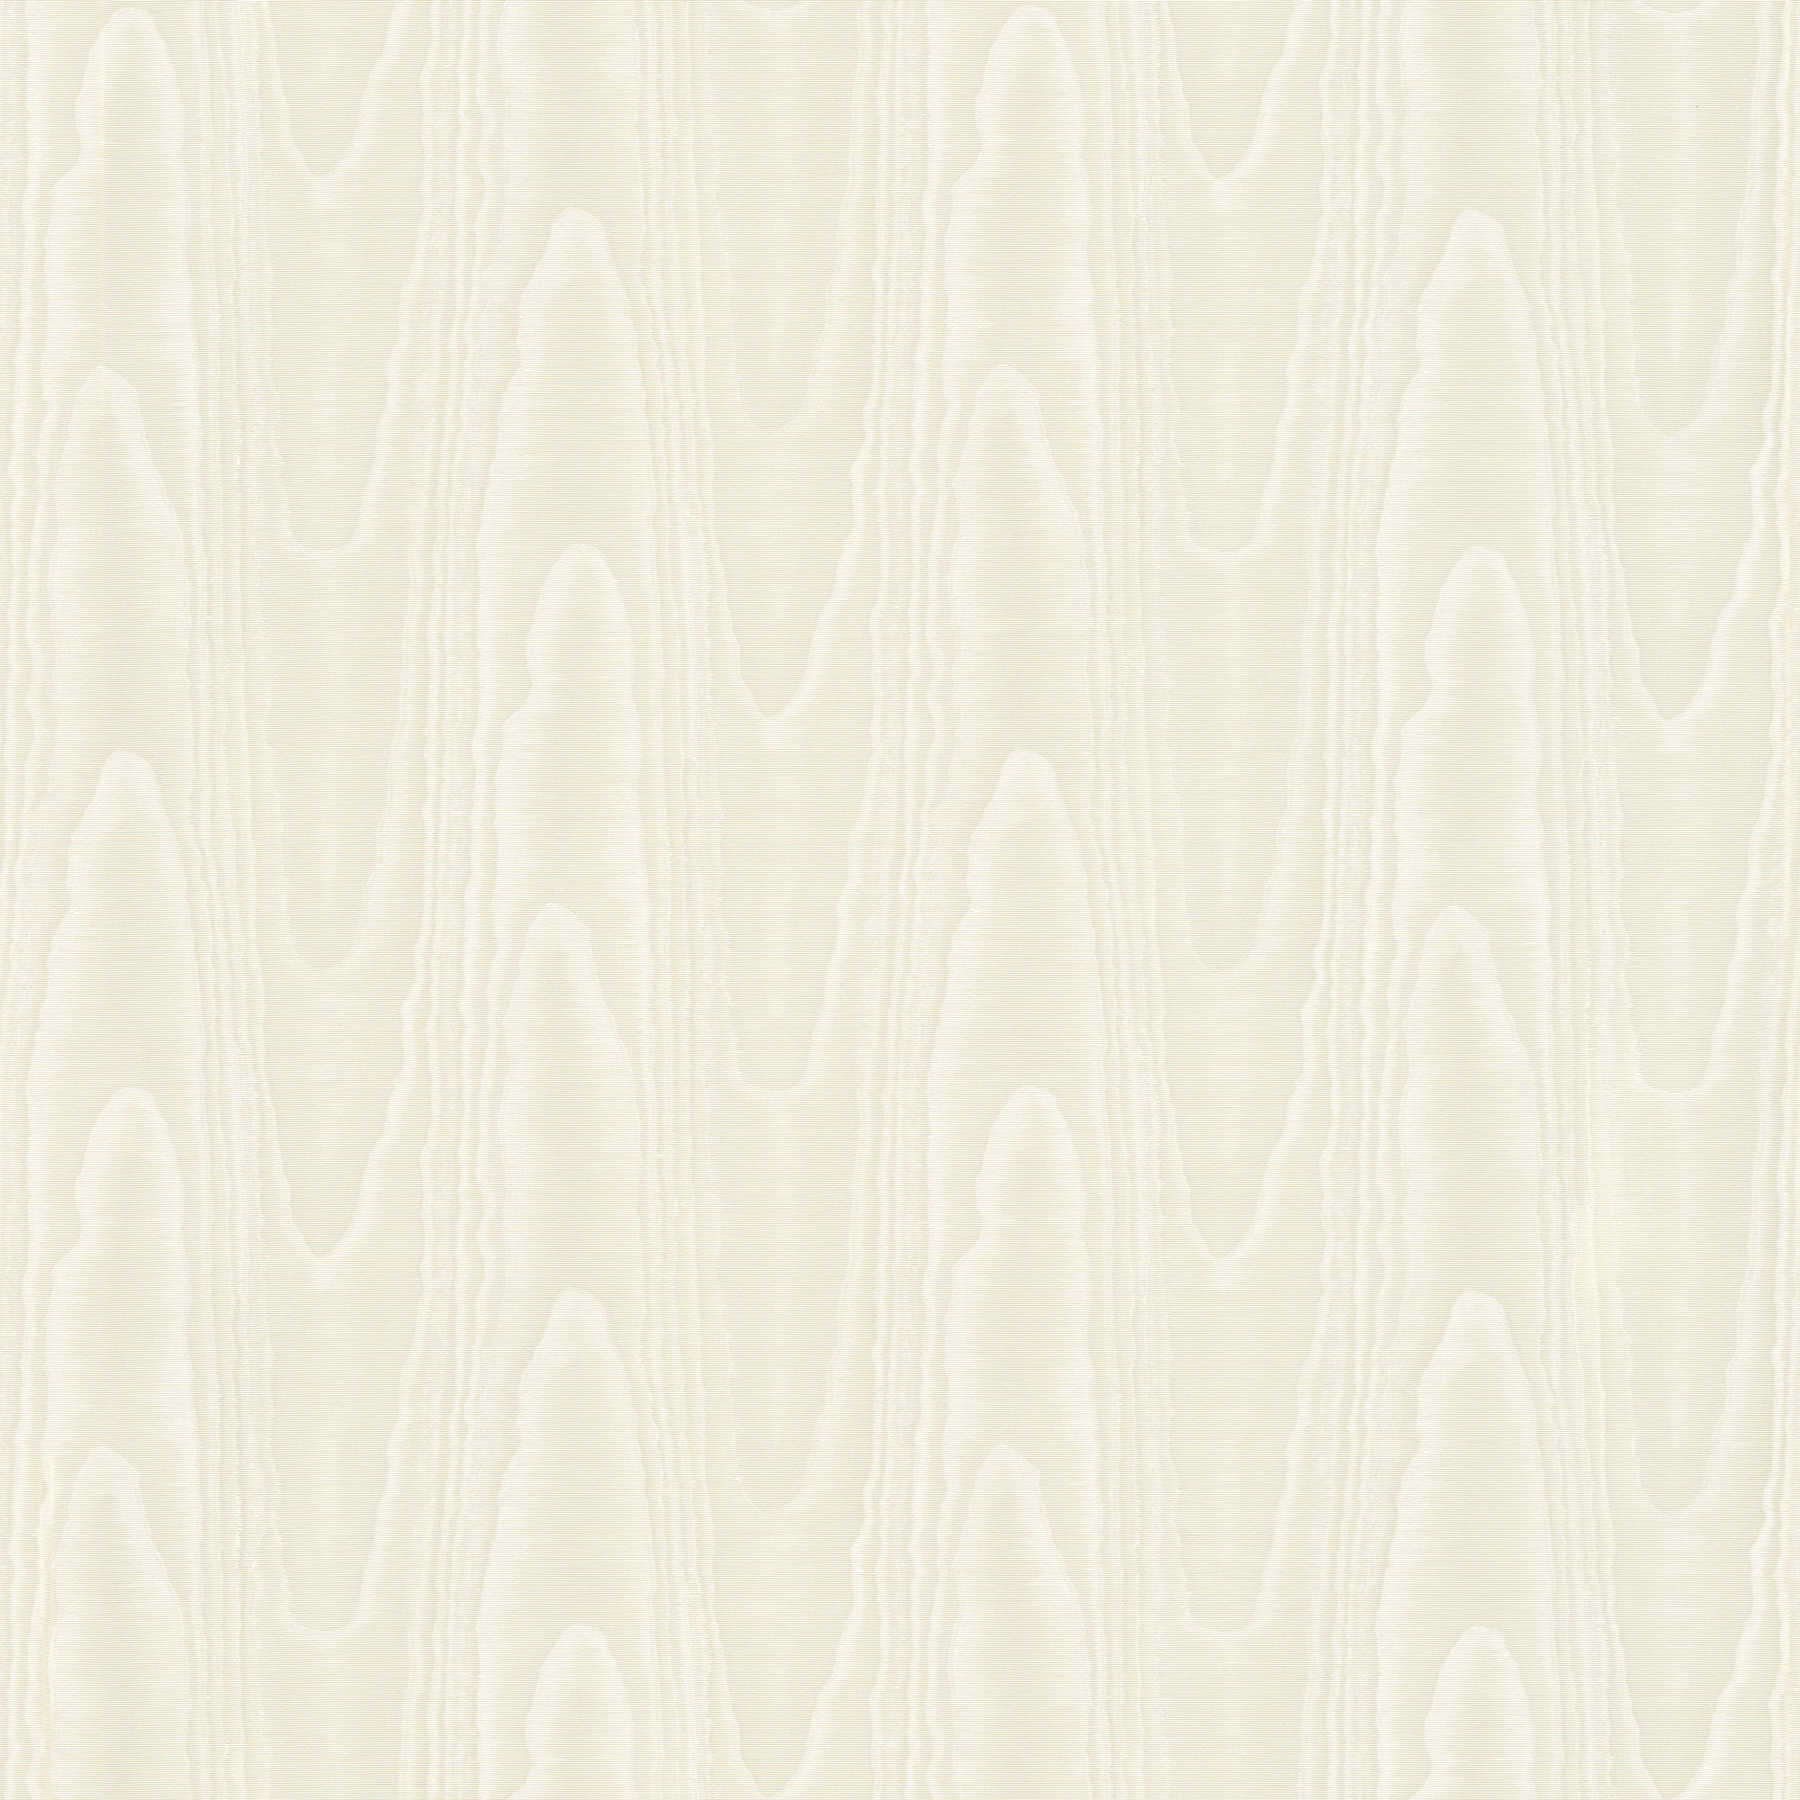 Textiel-look behangpapier crème met zijde moiré effect
